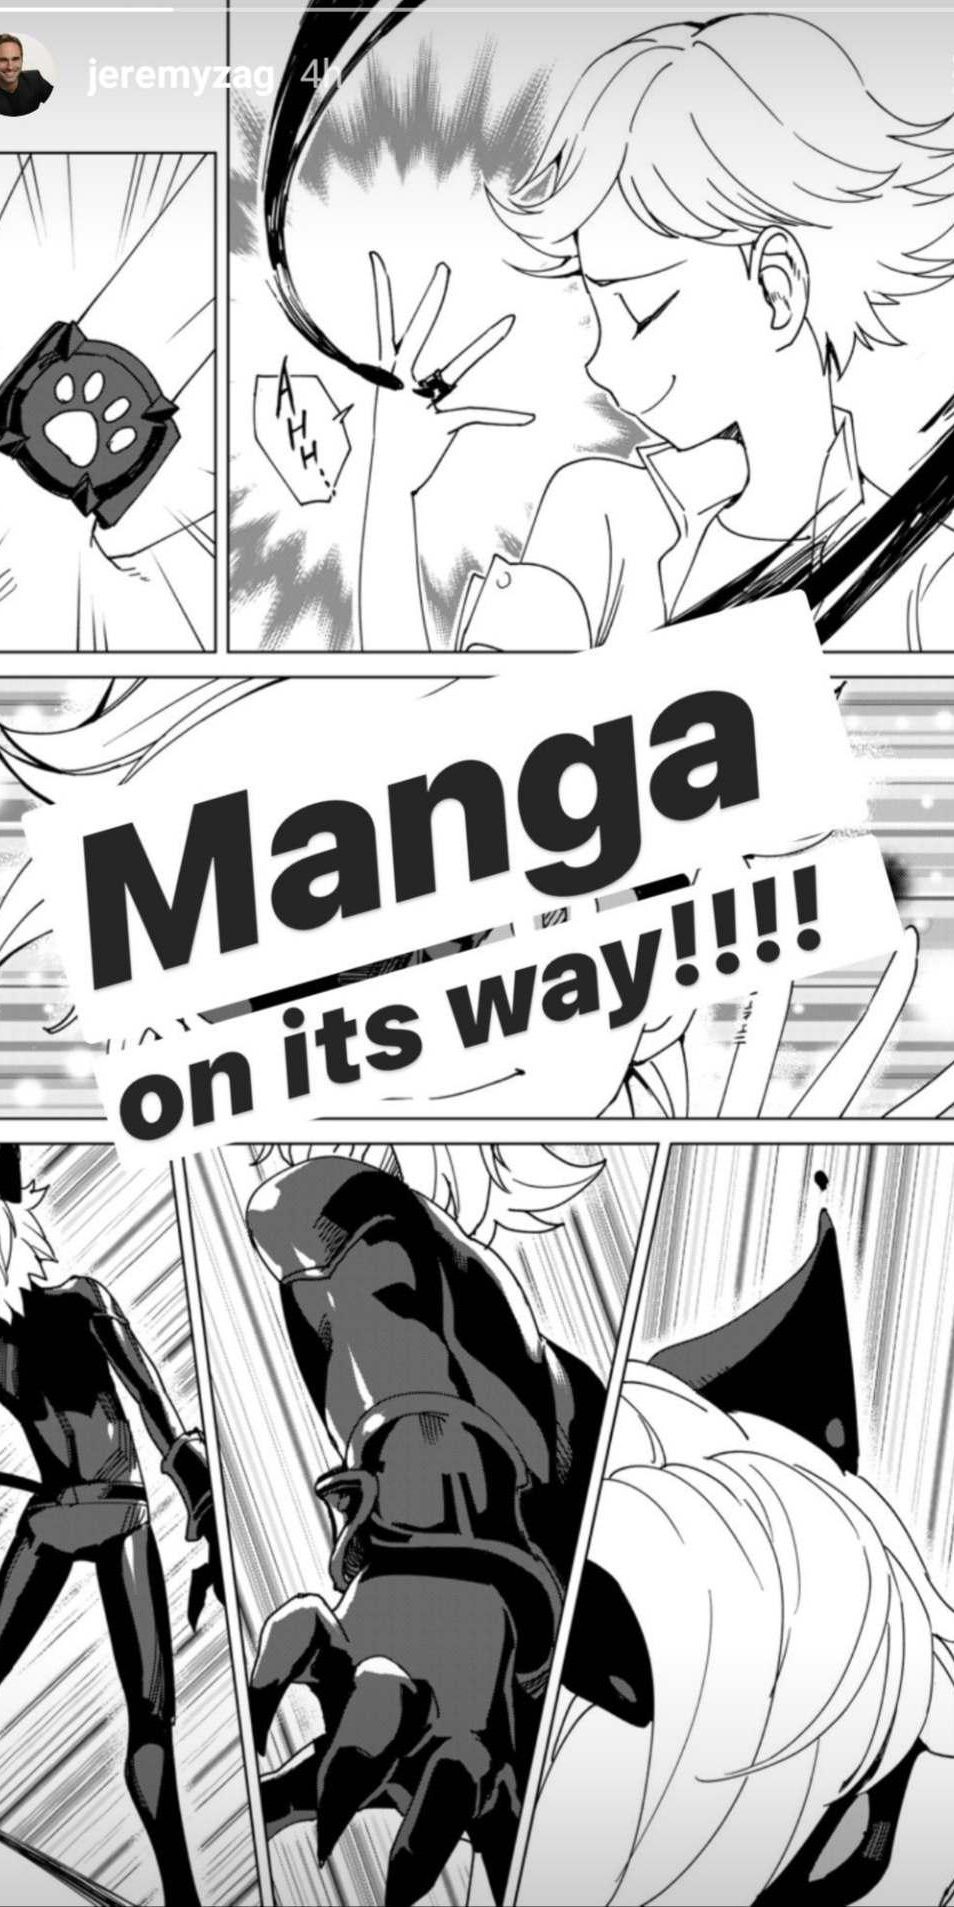 Imeline 'Manga Spinoff on nutikas liikumine anime inspireeritud seeria jaoks